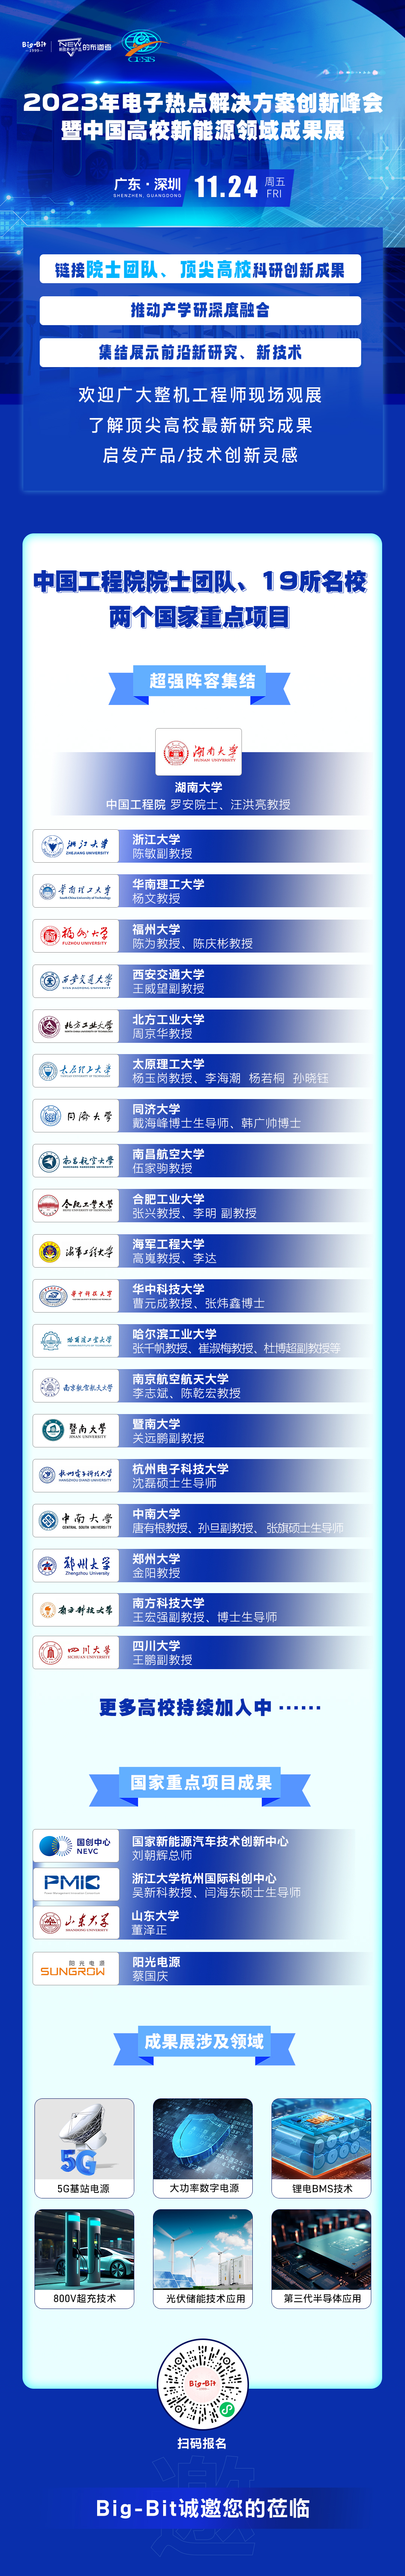 中国高校新能源领域成果展校企名单